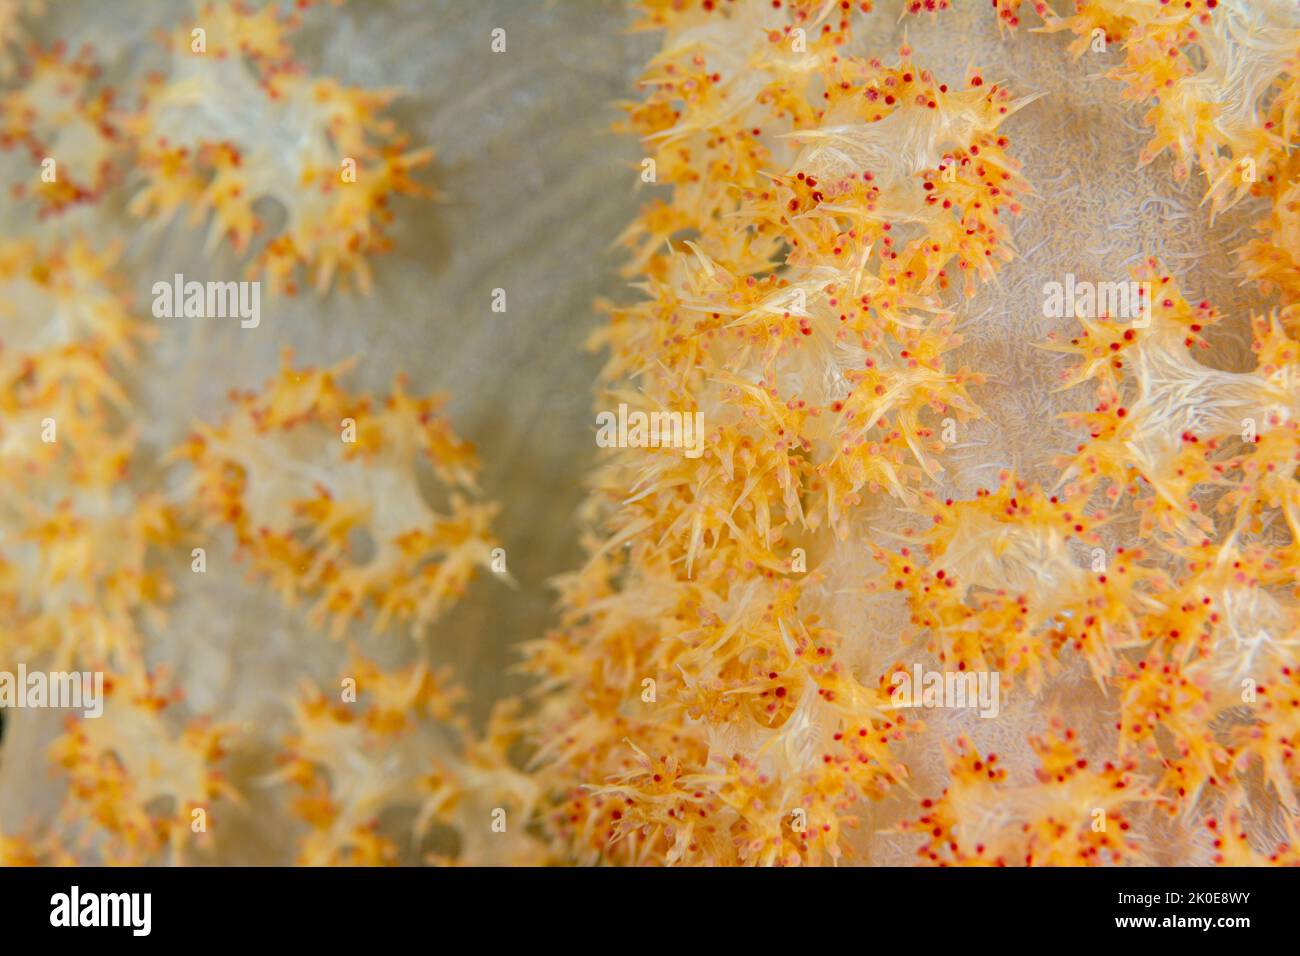 Nahaufnahme der tropischen Weichkorallen zeigt die komplizierten und zarten Tiere, die sich auf den Korallen zu einem wunderschönen Lebenselement im südlichen paci besiedeln Stockfoto